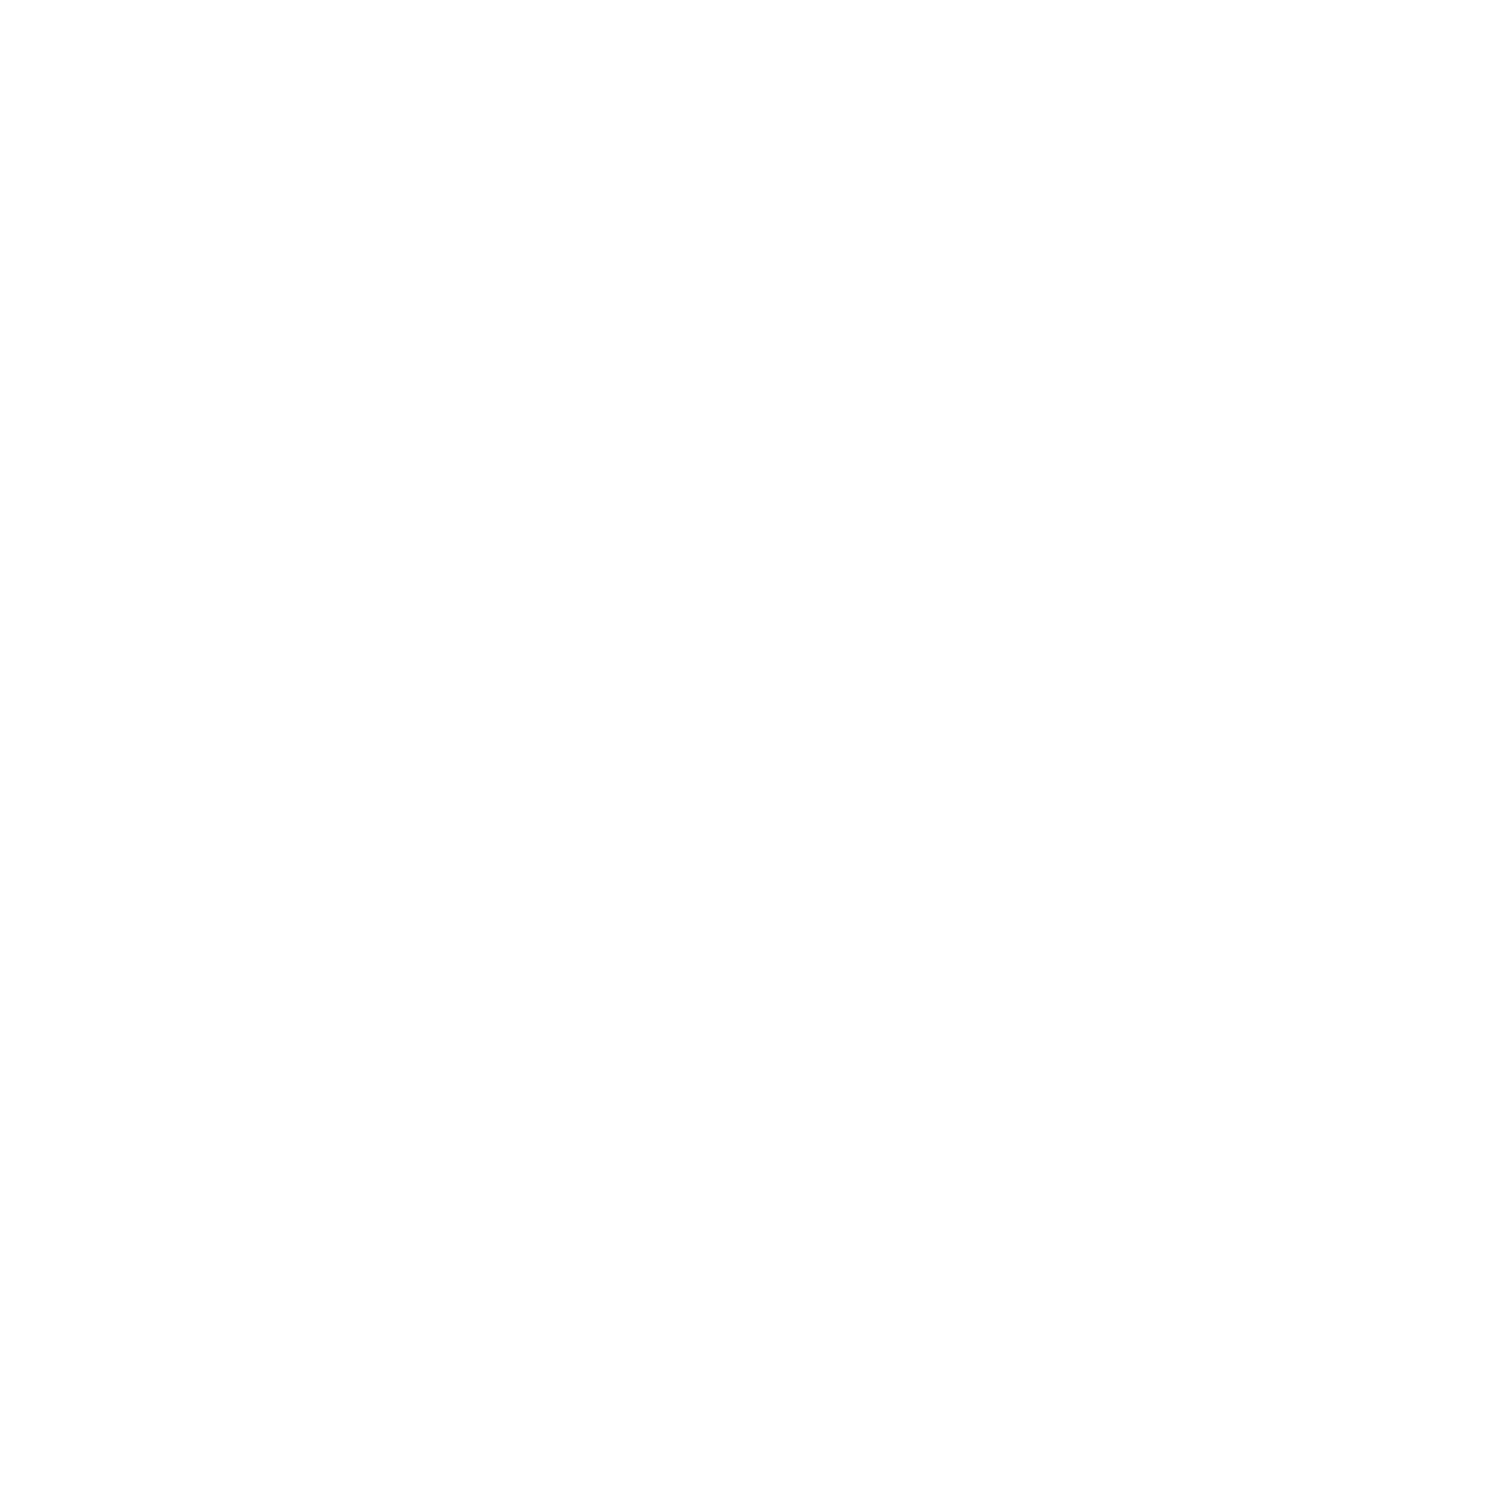 Creative Culture Tribe